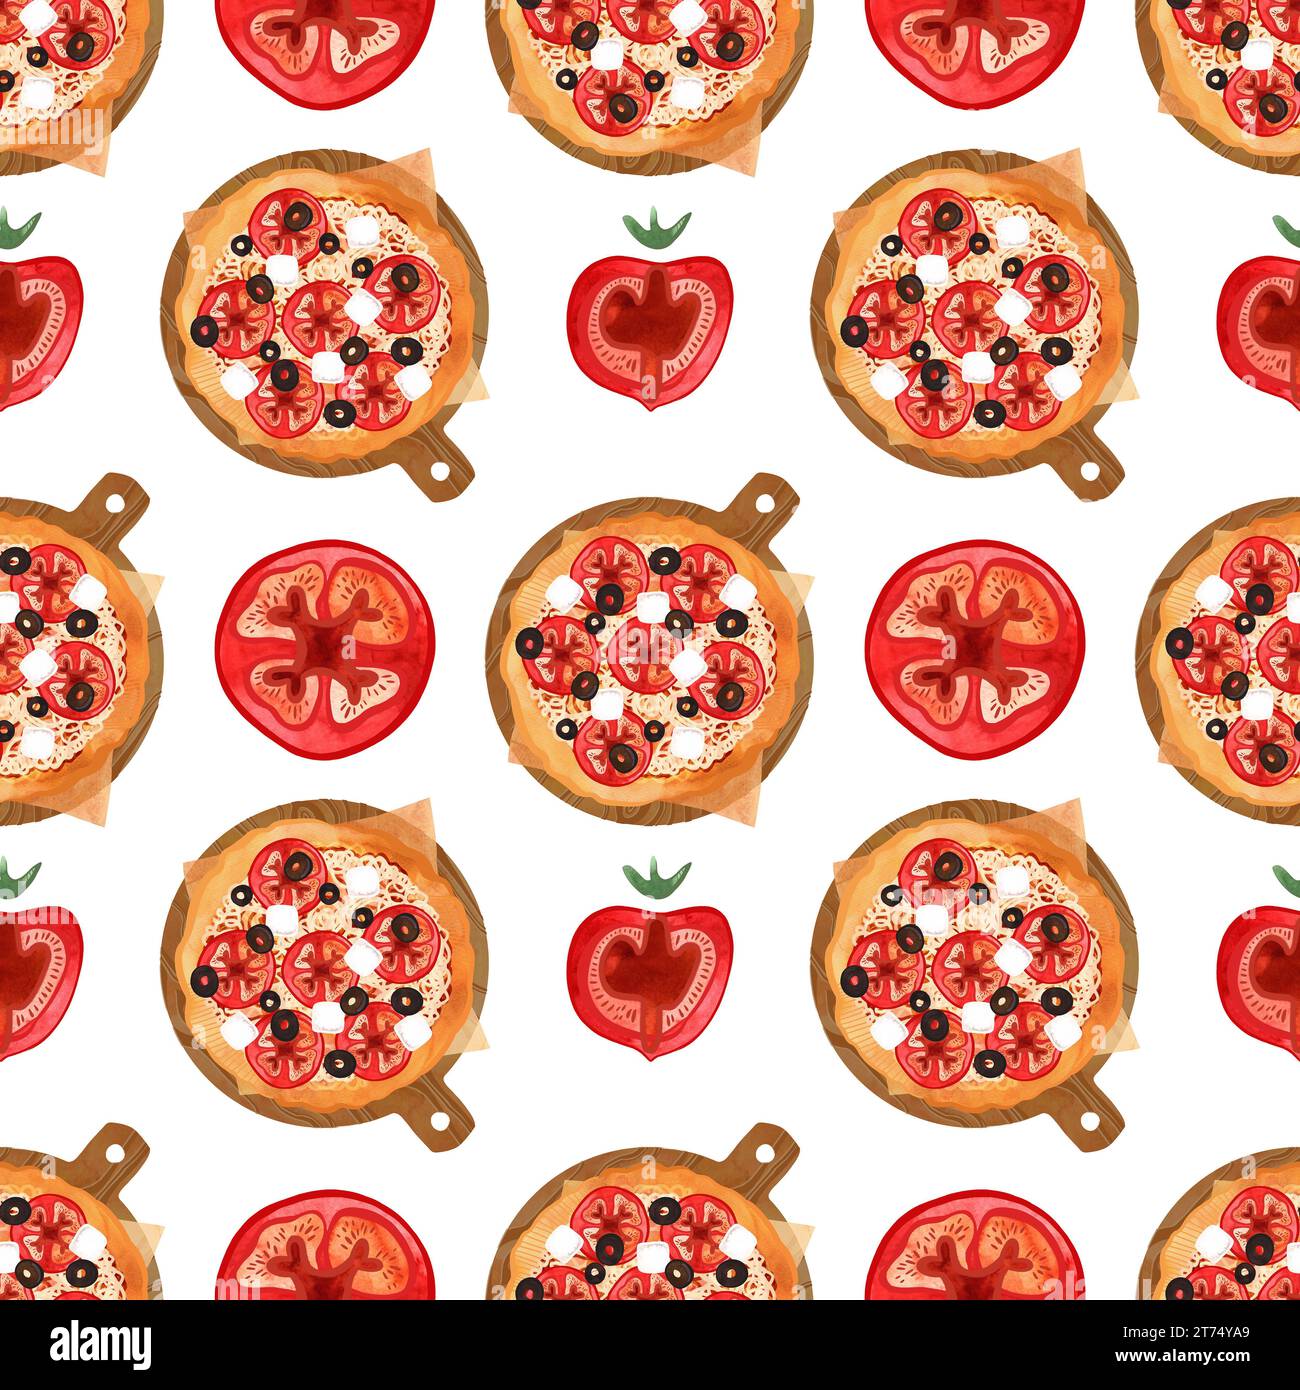 Modèle de pizza sans couture avec des tomates, des olives et du fromage. Illustration aquarelle pour les menus, recettes, textiles de cuisine, conception de cafés, restaurants et Banque D'Images